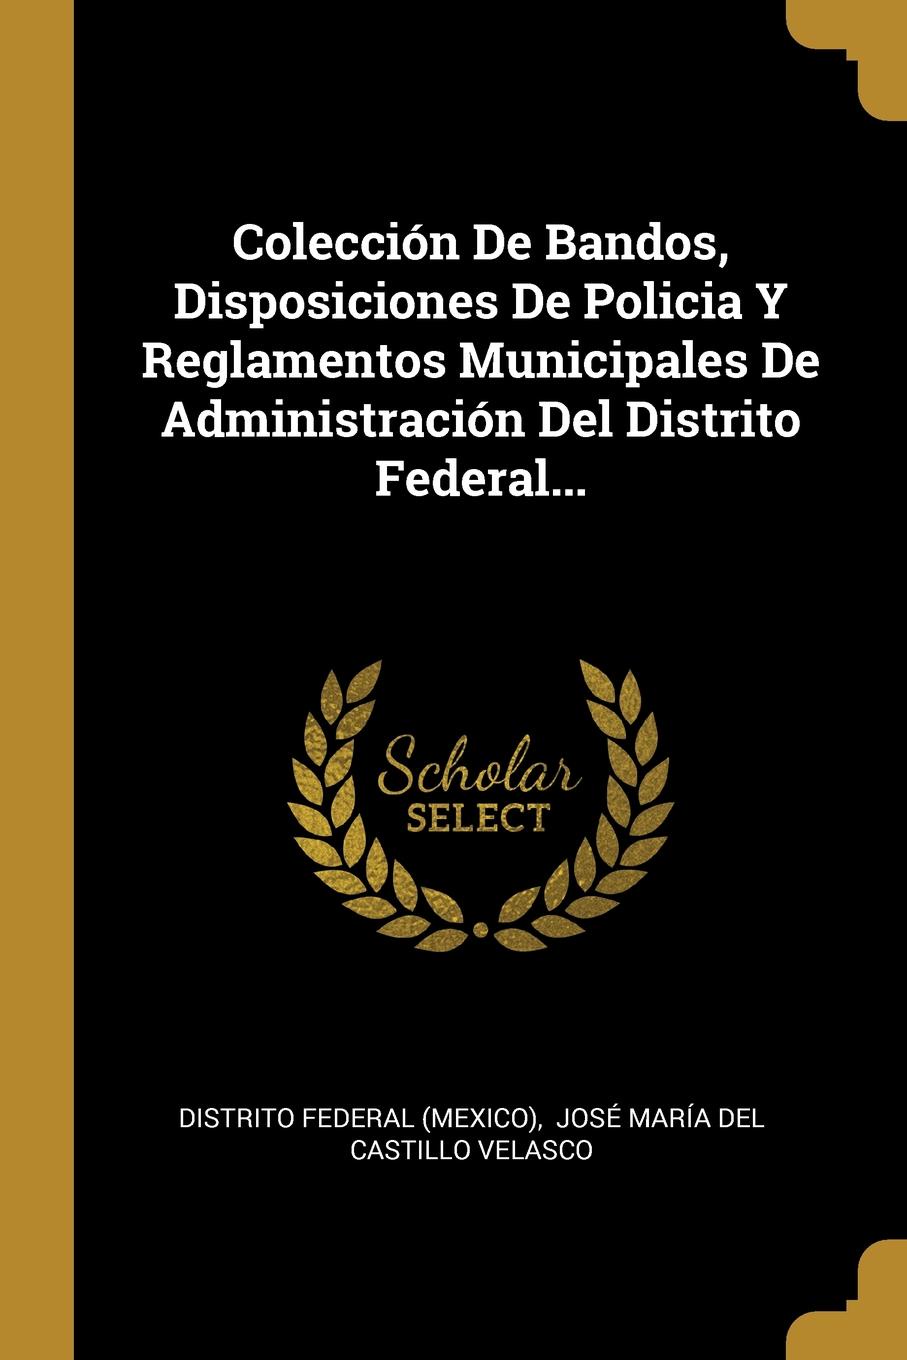 Coleccion De Bandos, Disposiciones De Policia Y Reglamentos Municipales De Administracion Del Distrito Federal...